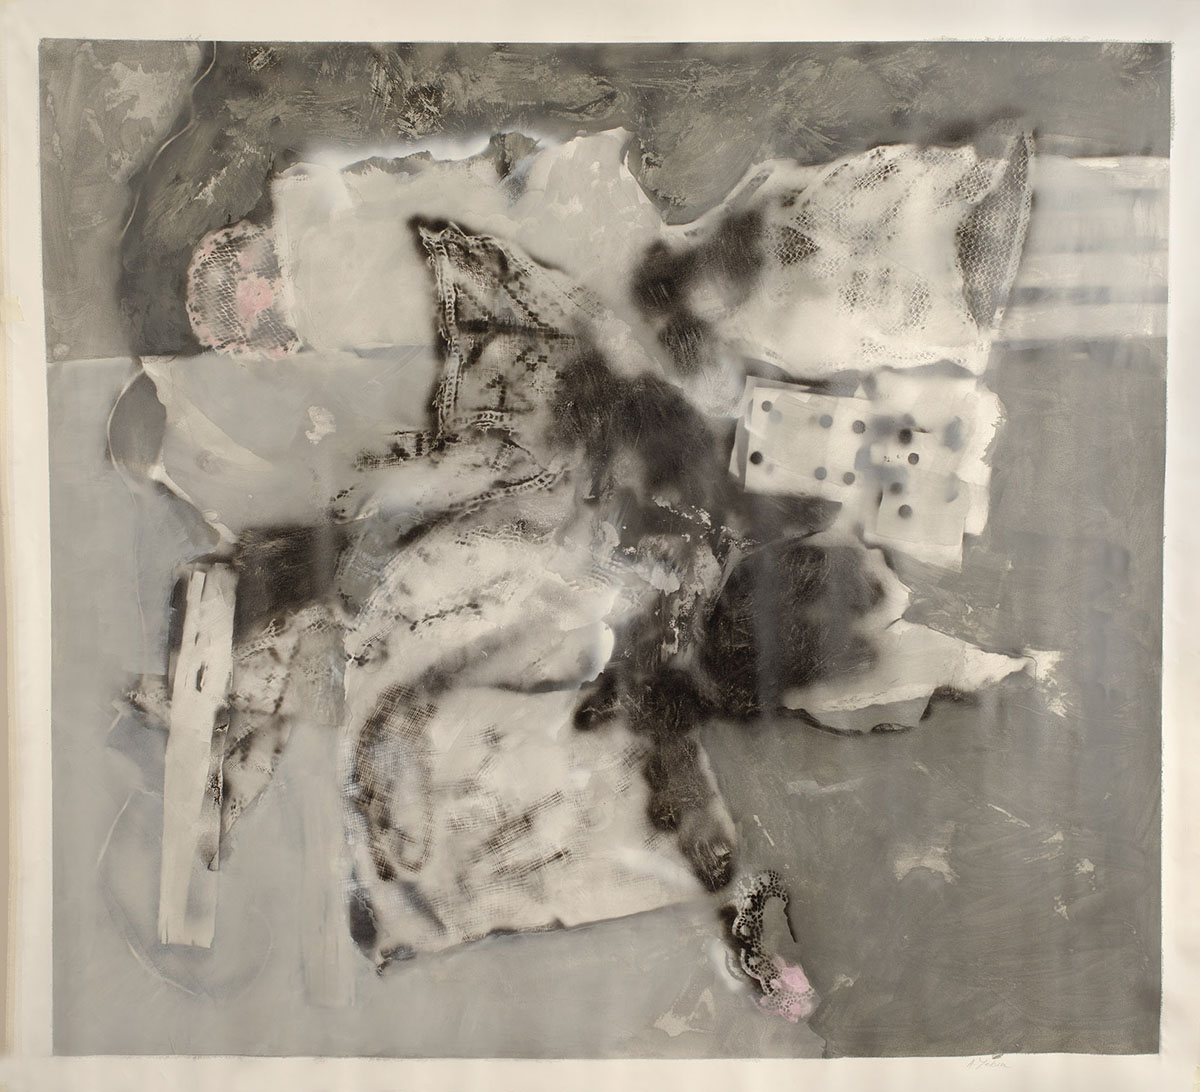 acrílico y aerosol sobre tela, 210 x 210 cm, 2012